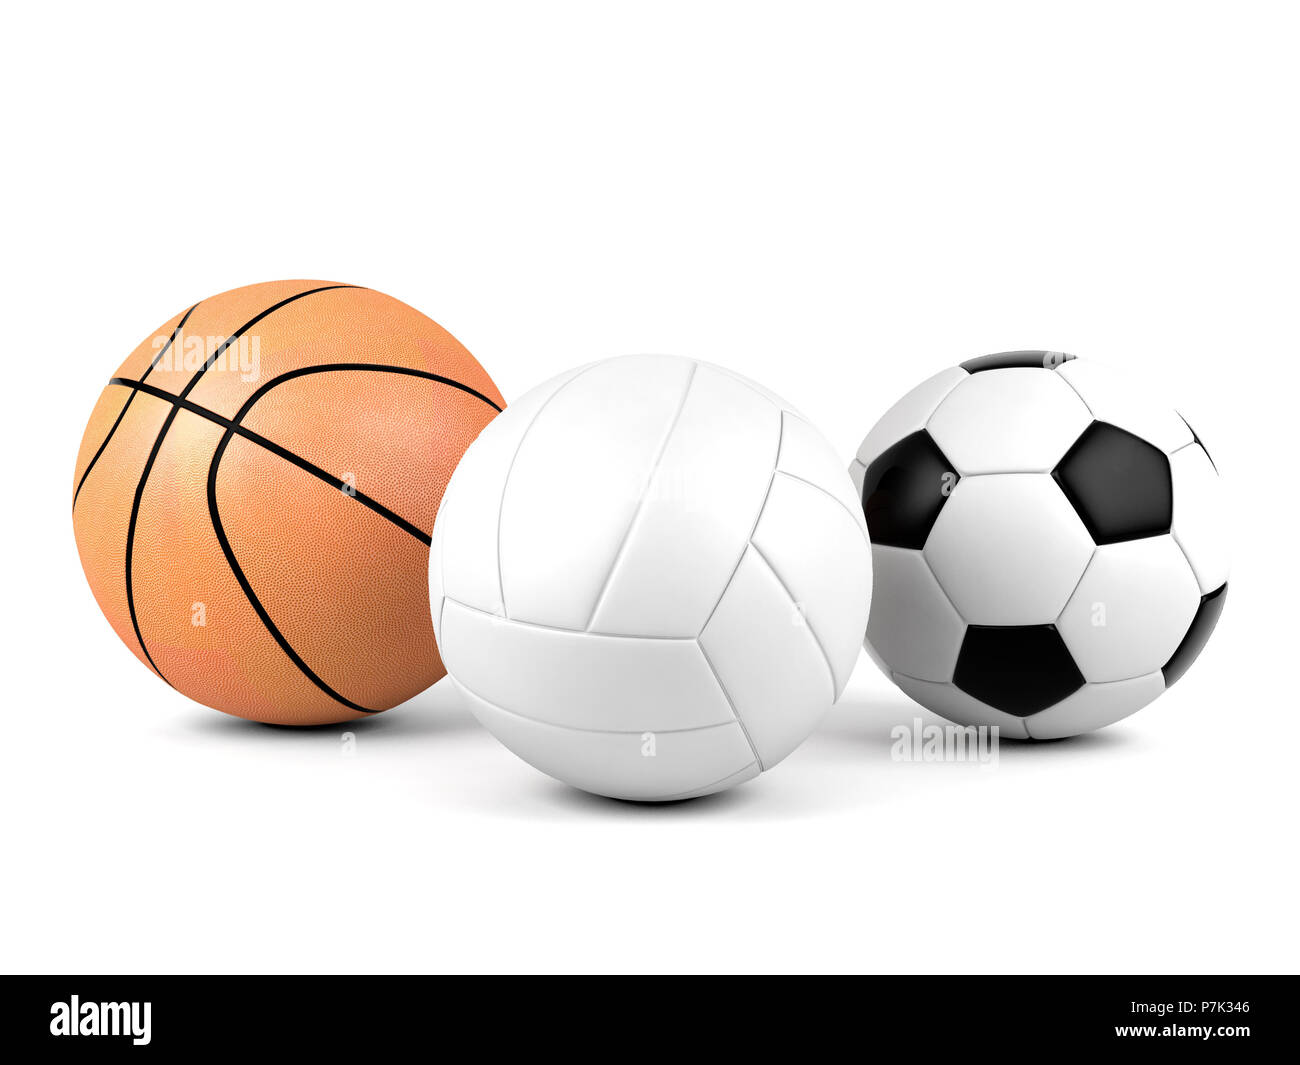 Calcio pallavolo immagini e fotografie stock ad alta risoluzione - Alamy